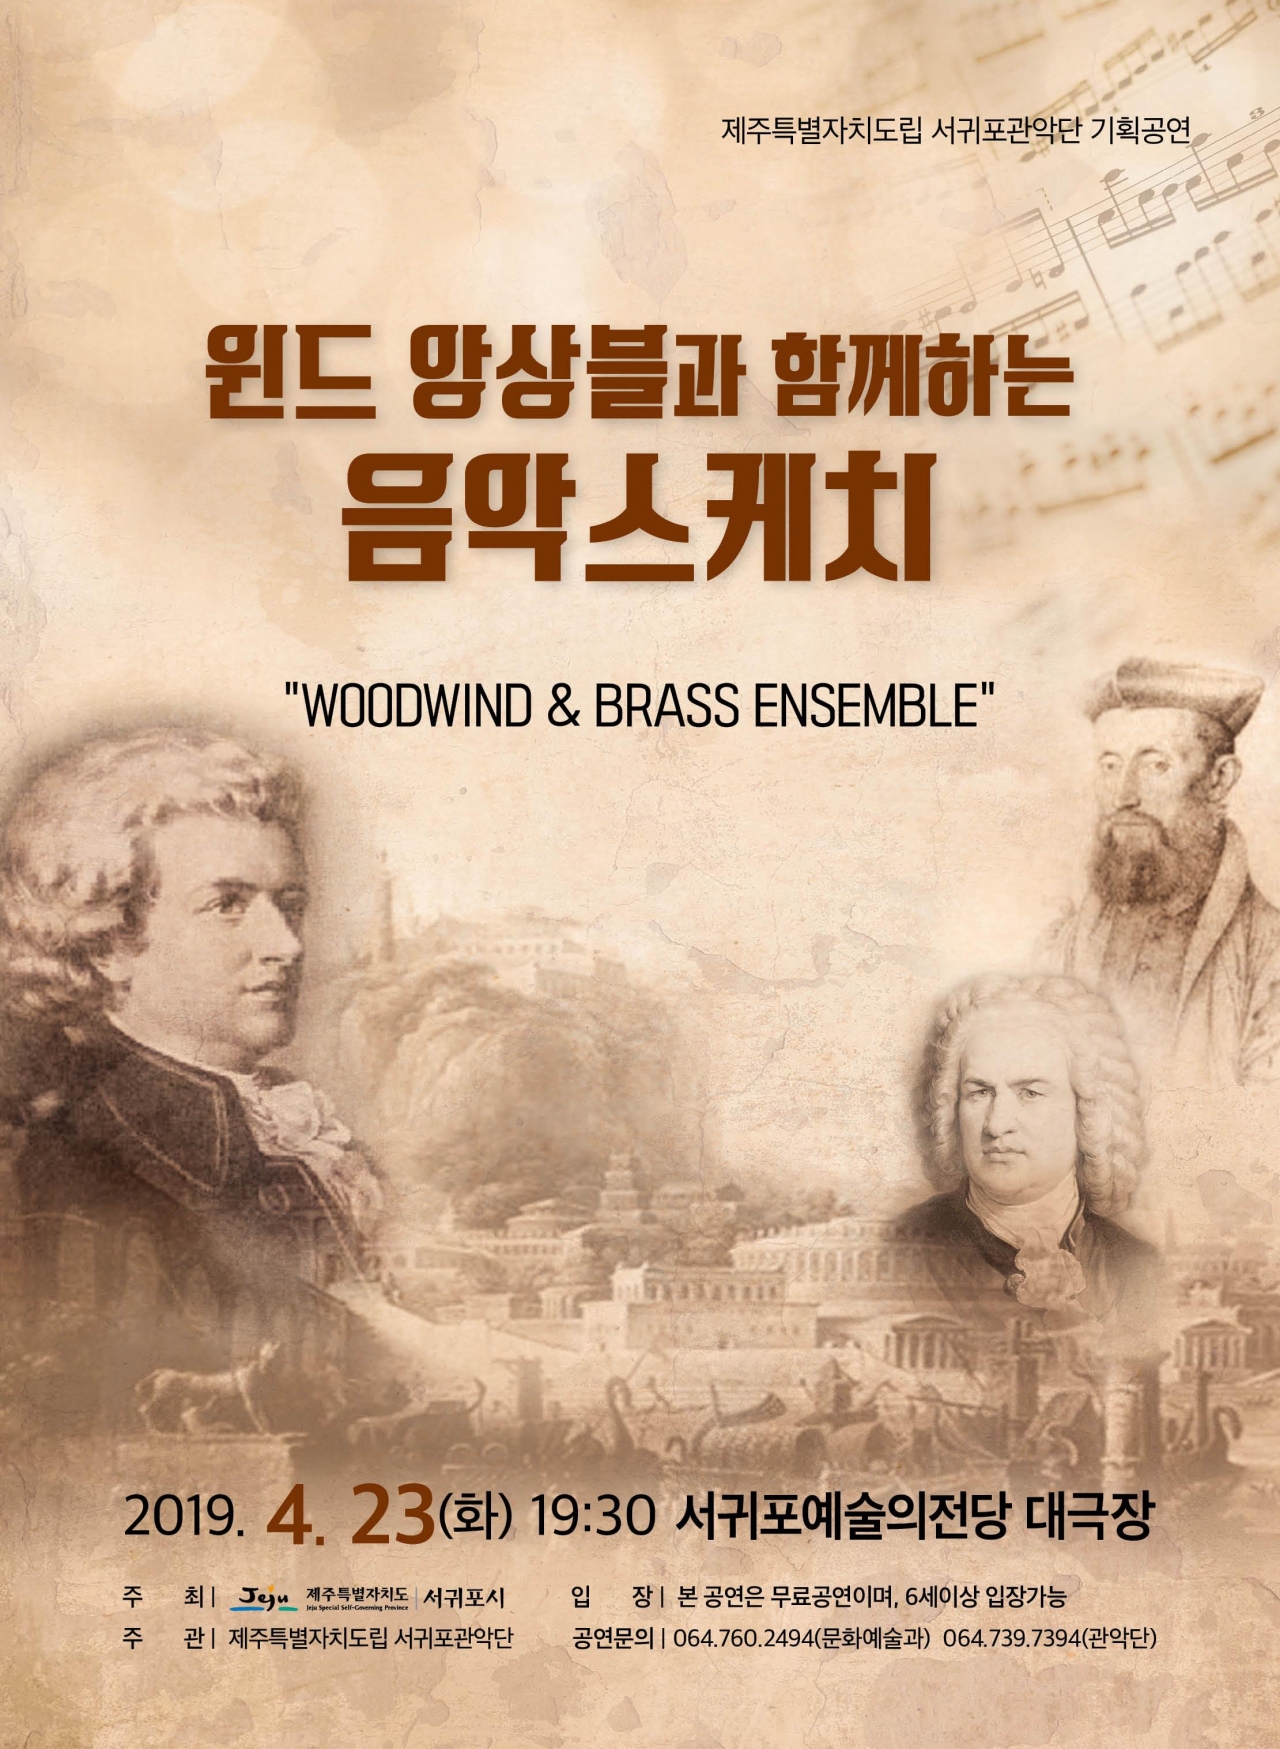 도립서귀포관악단이 마련한 기획공연 '윈드 앙상블과 함께하는 음악 스케치' 포스터.